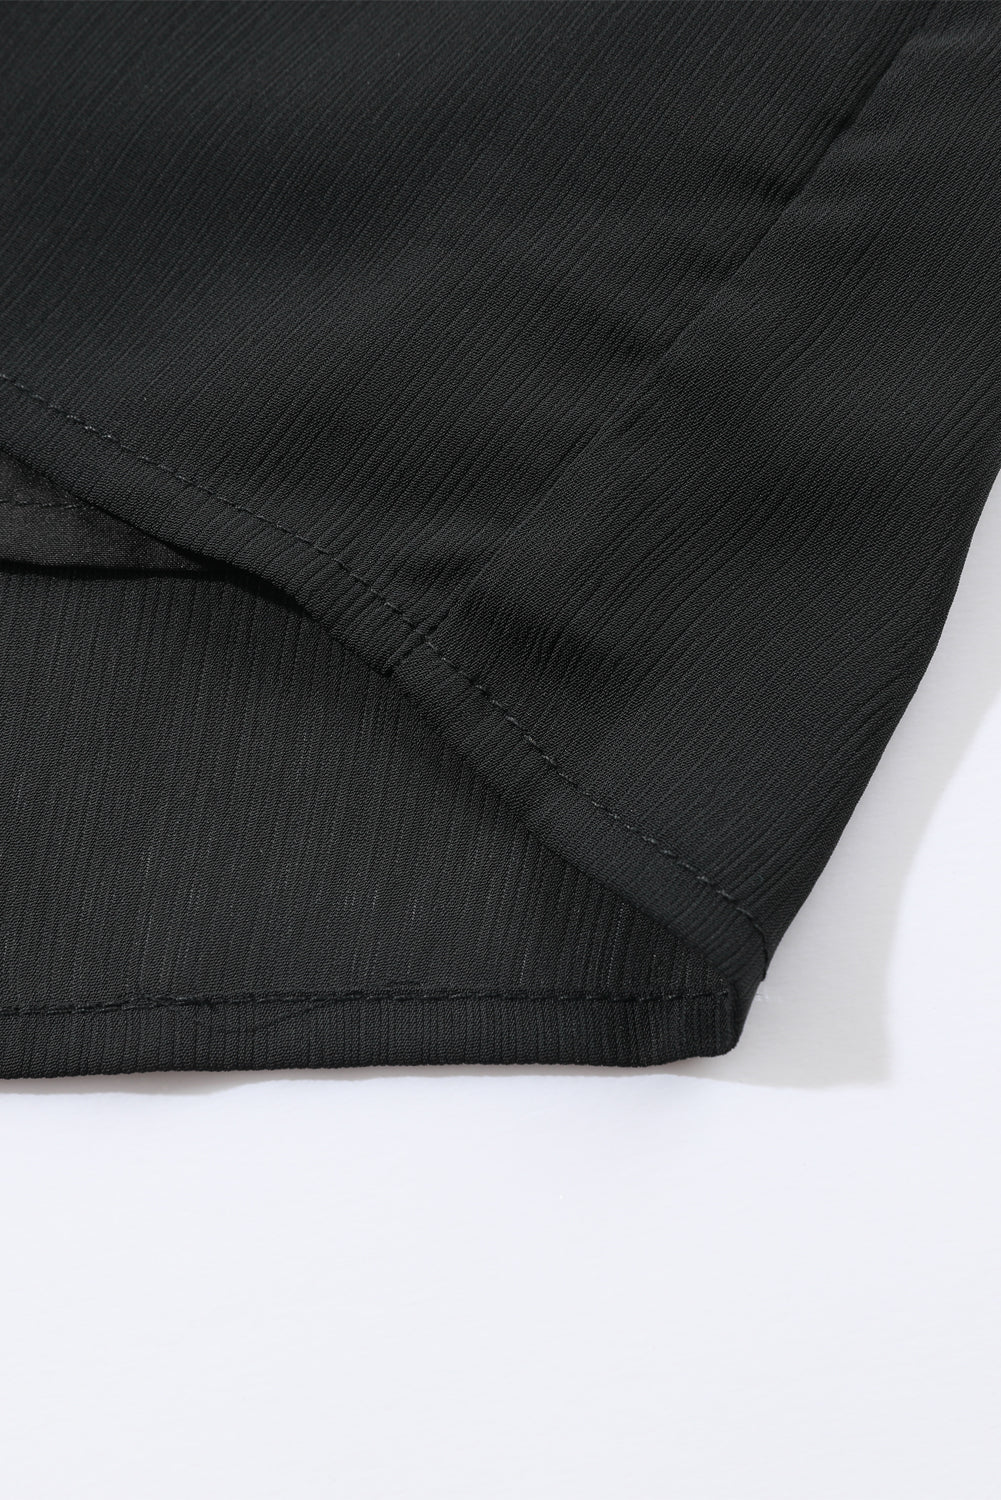 Crna bluza veće veličine s naborima i kopčanjem na ramenima